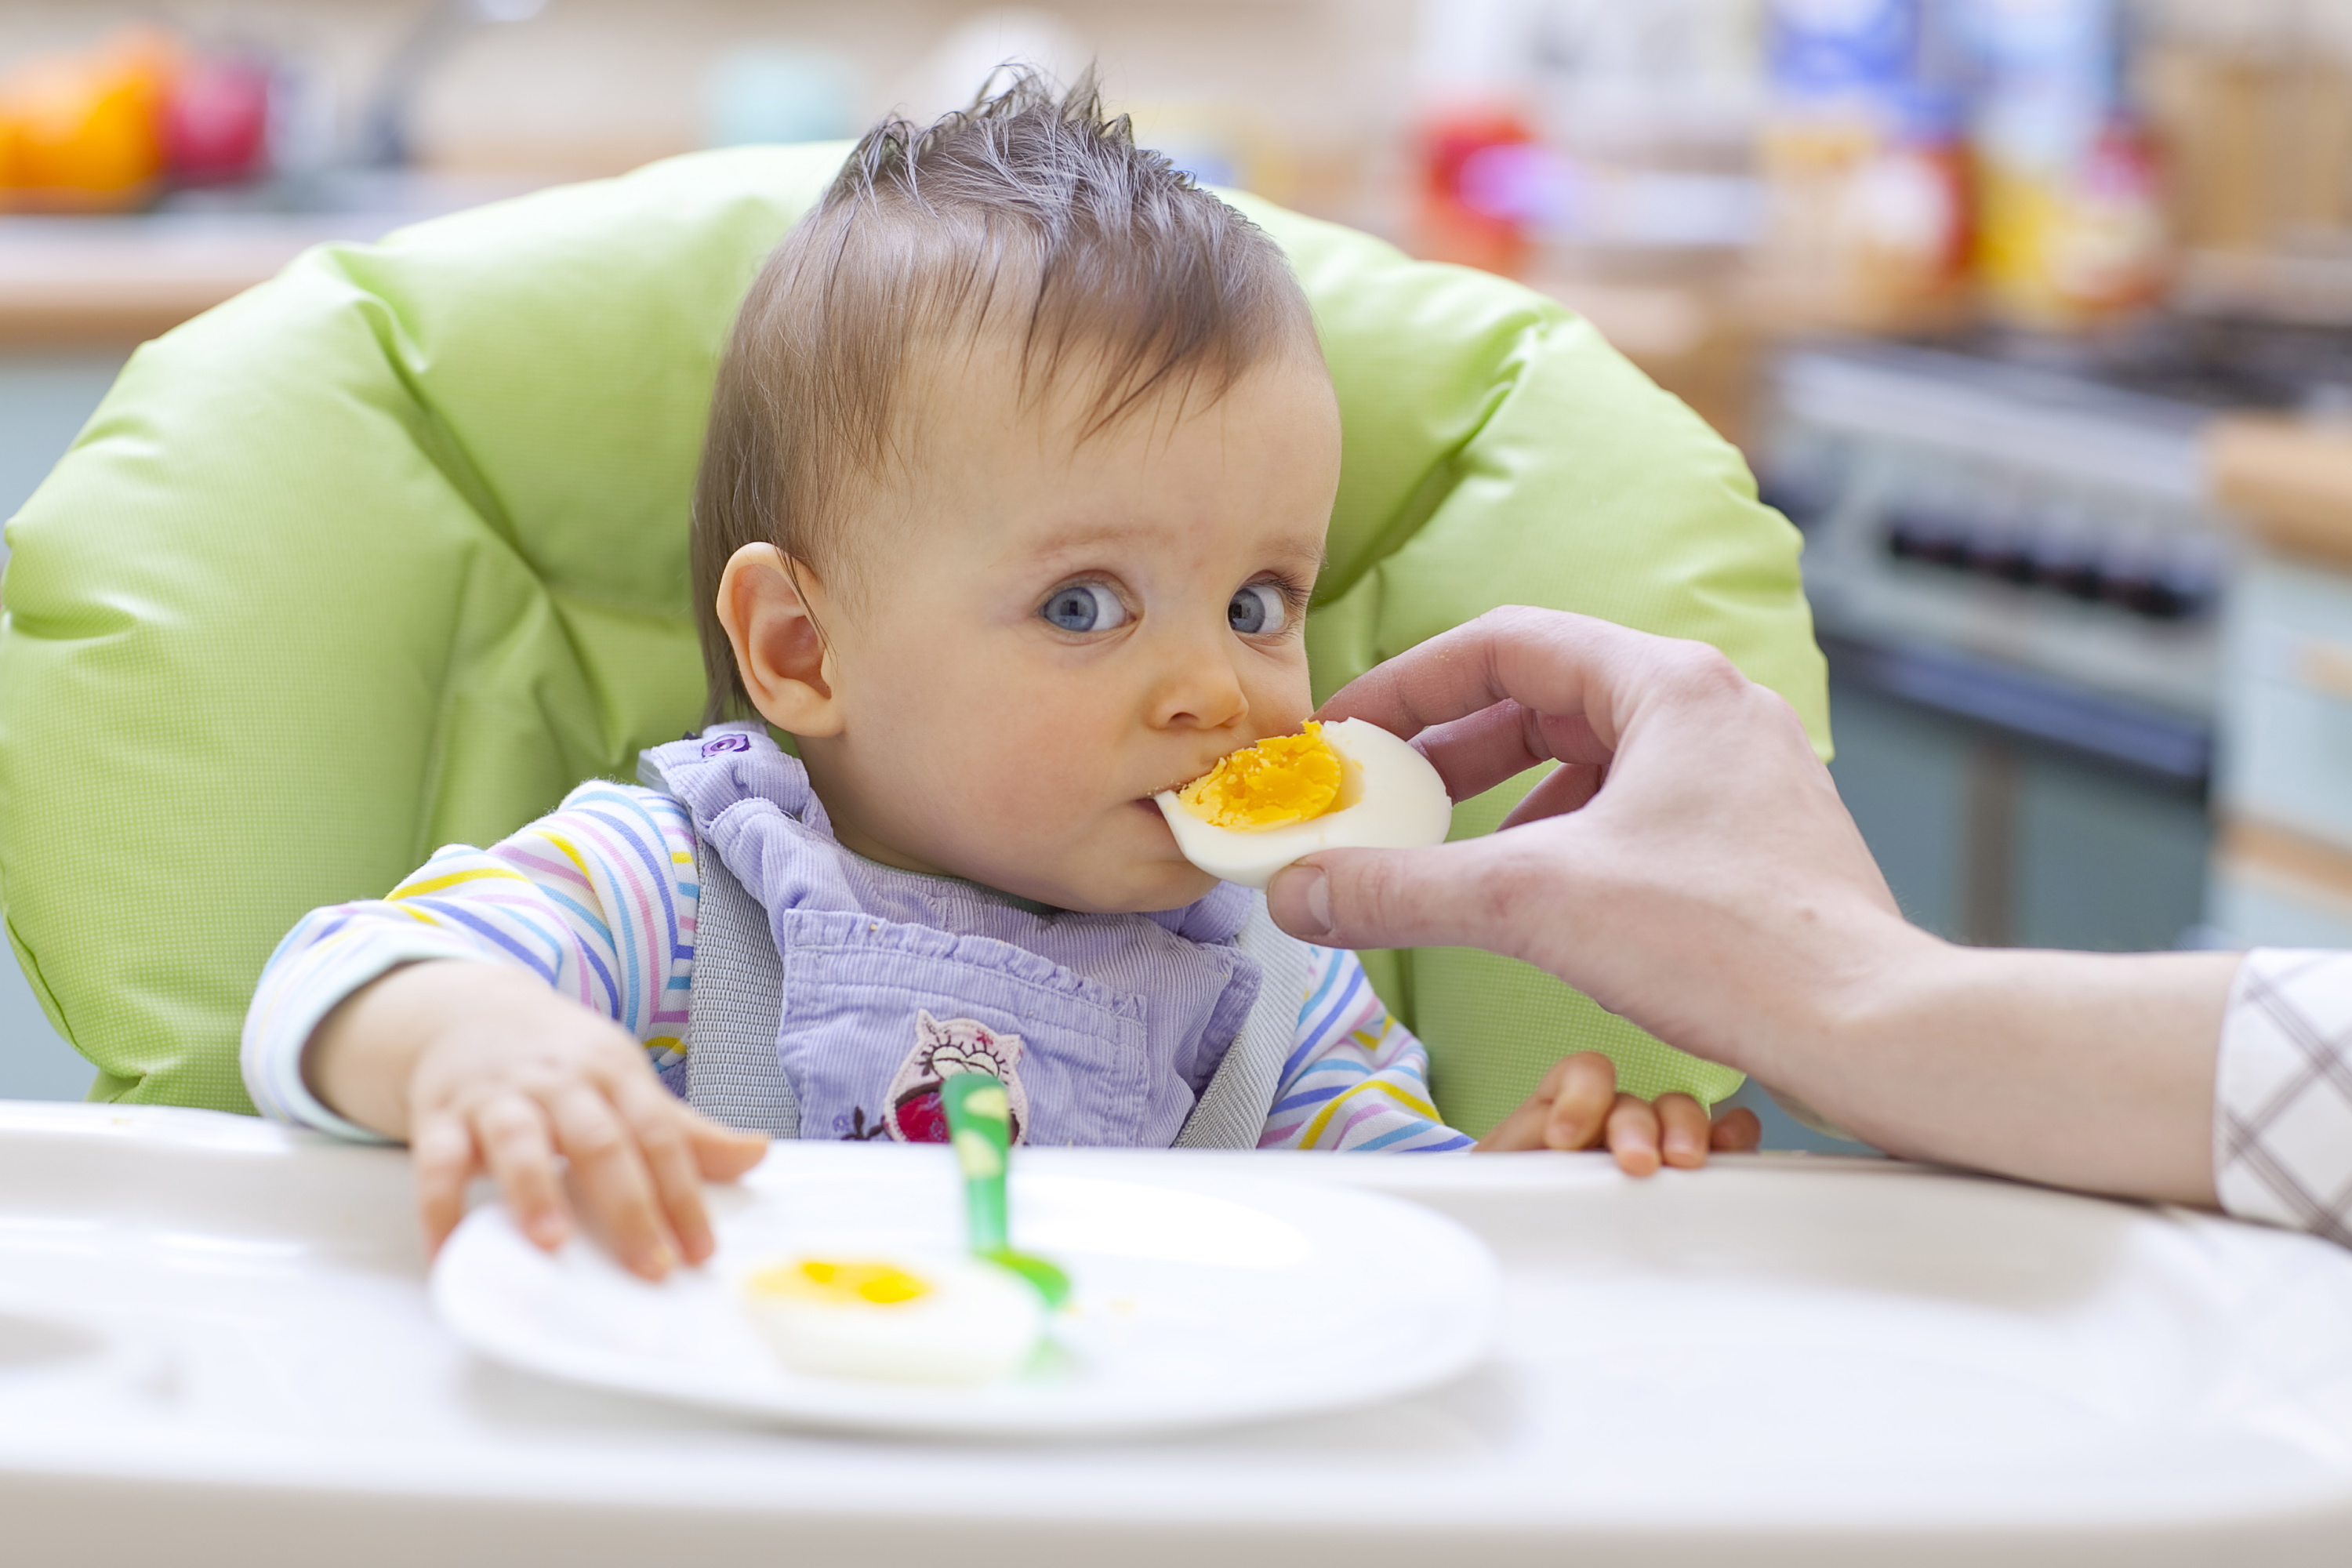 La introducción del huevo en la dieta de bebes reduce el riesgo de alergias